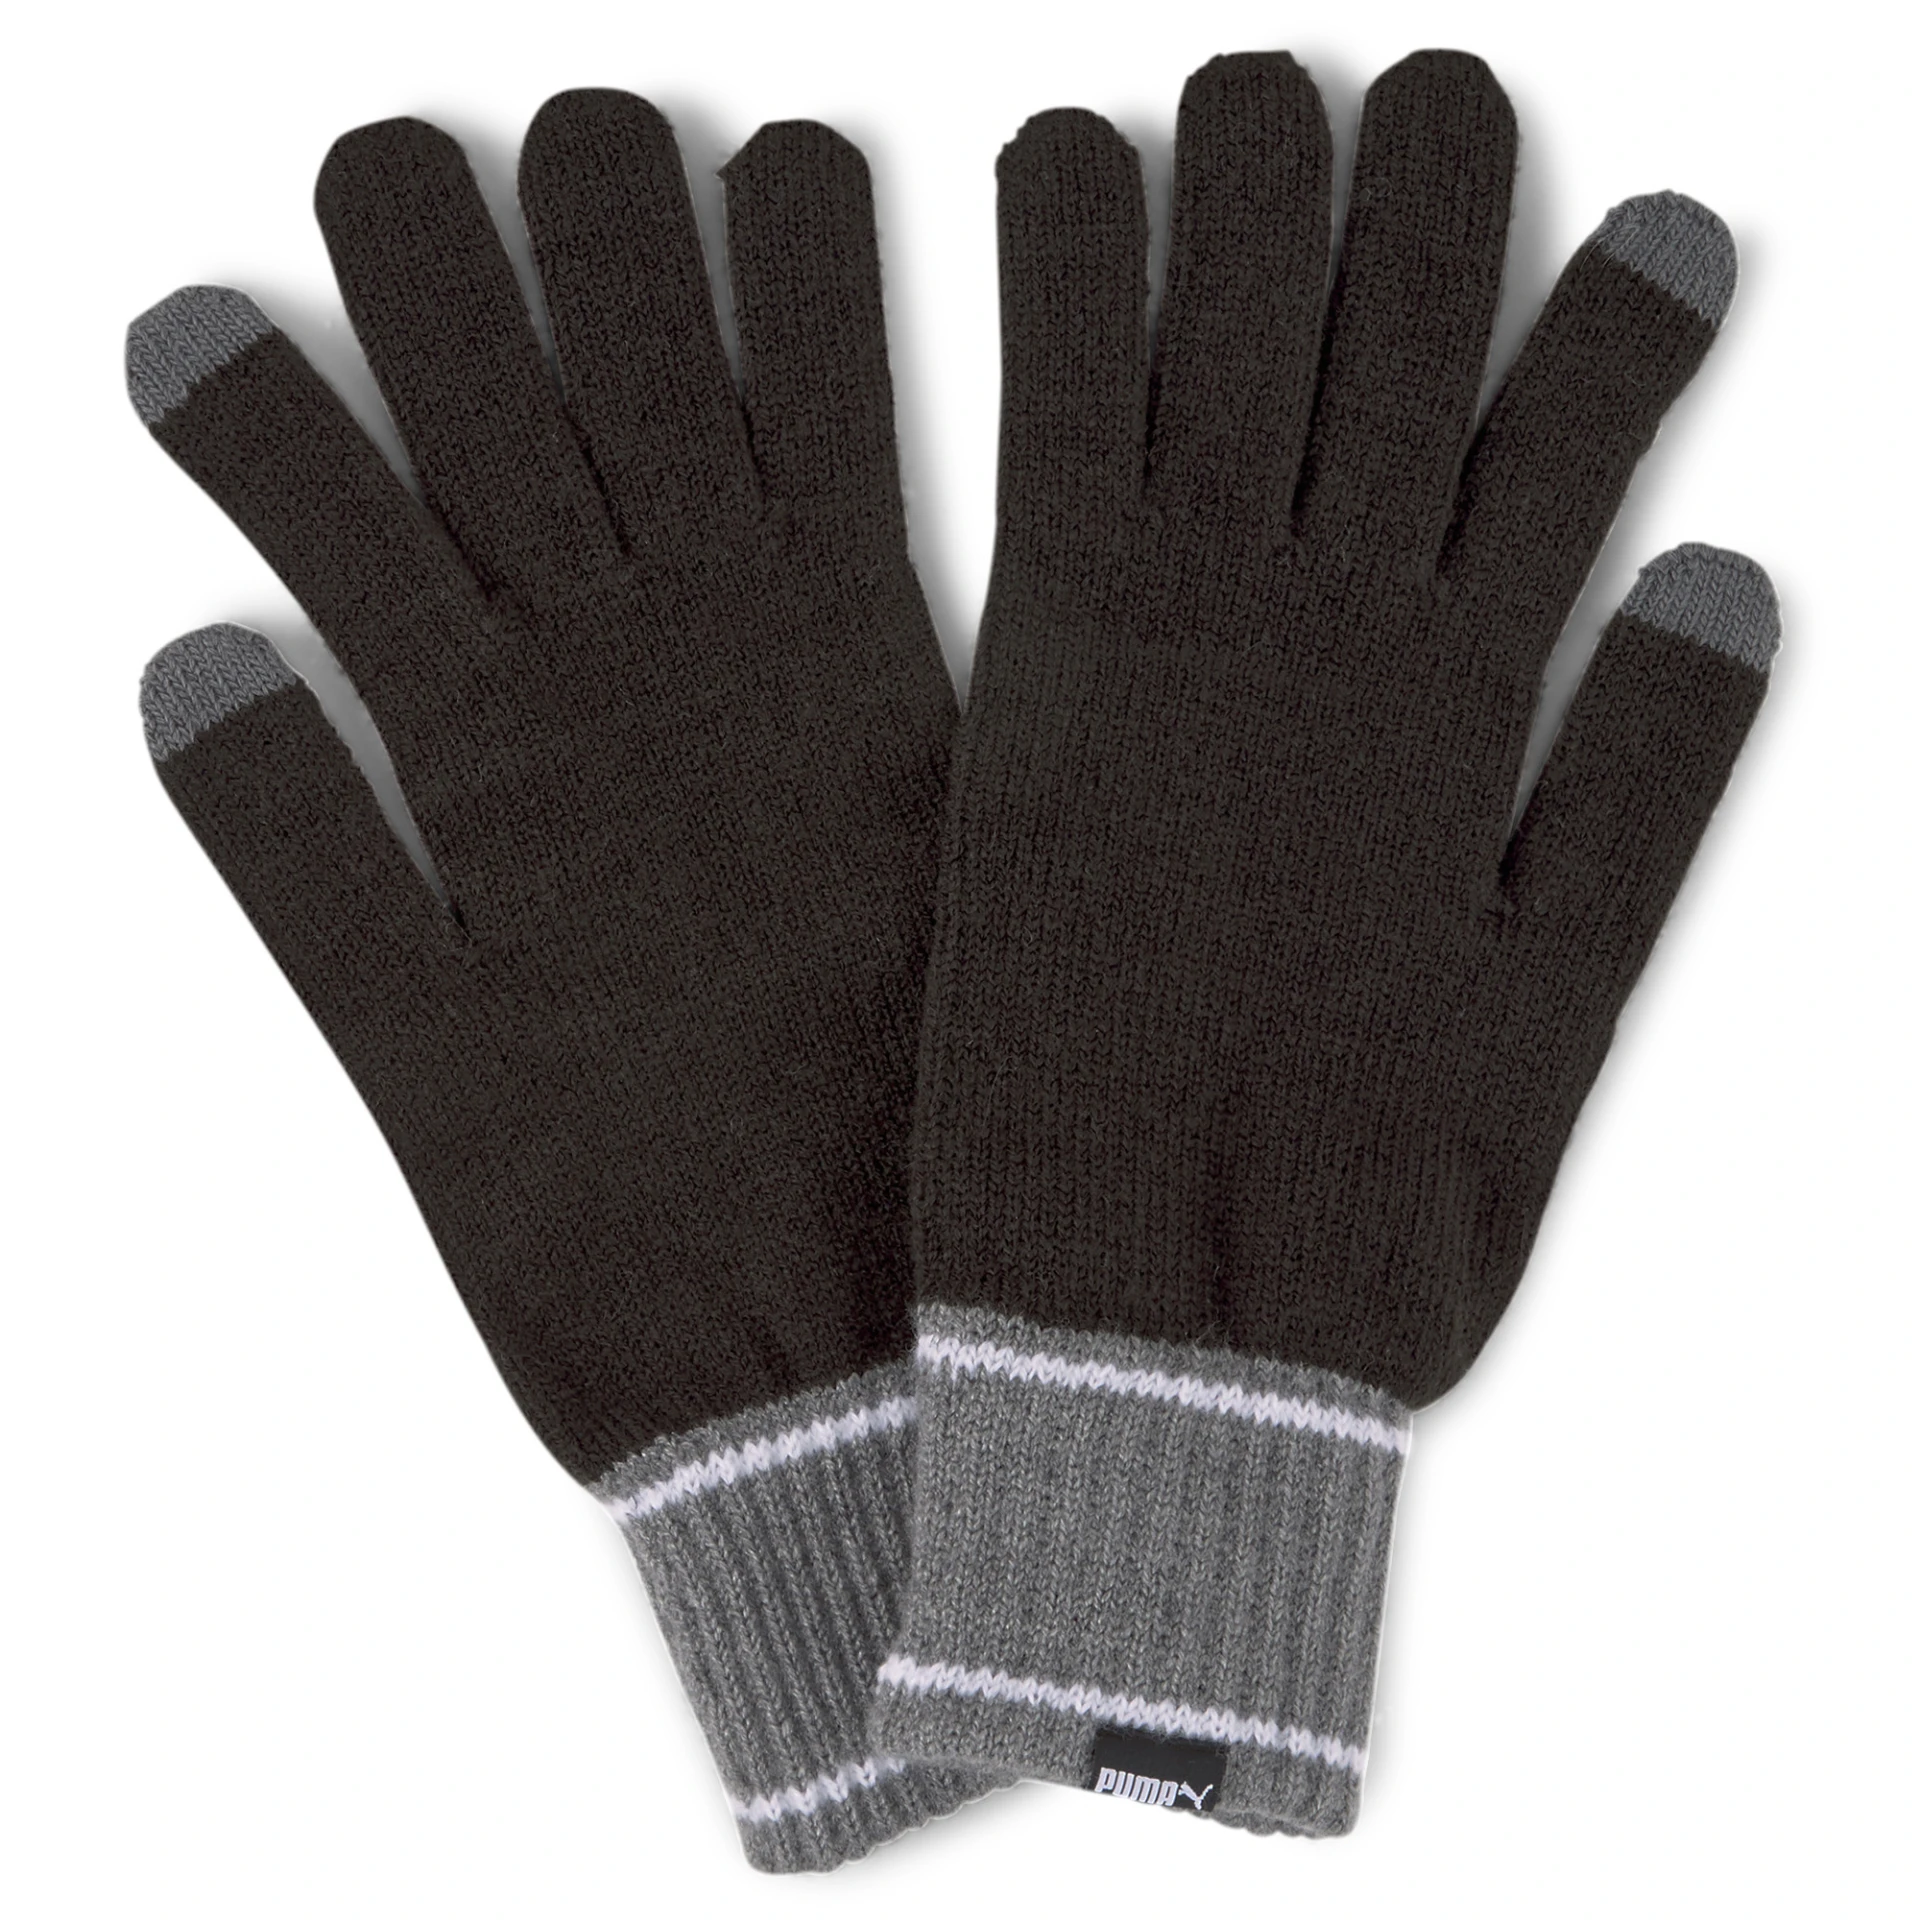 PUMA Herren_Handschuhe_Knit_Gloves 041772 001 PUMA BLACK-DARK GRAY HEATH